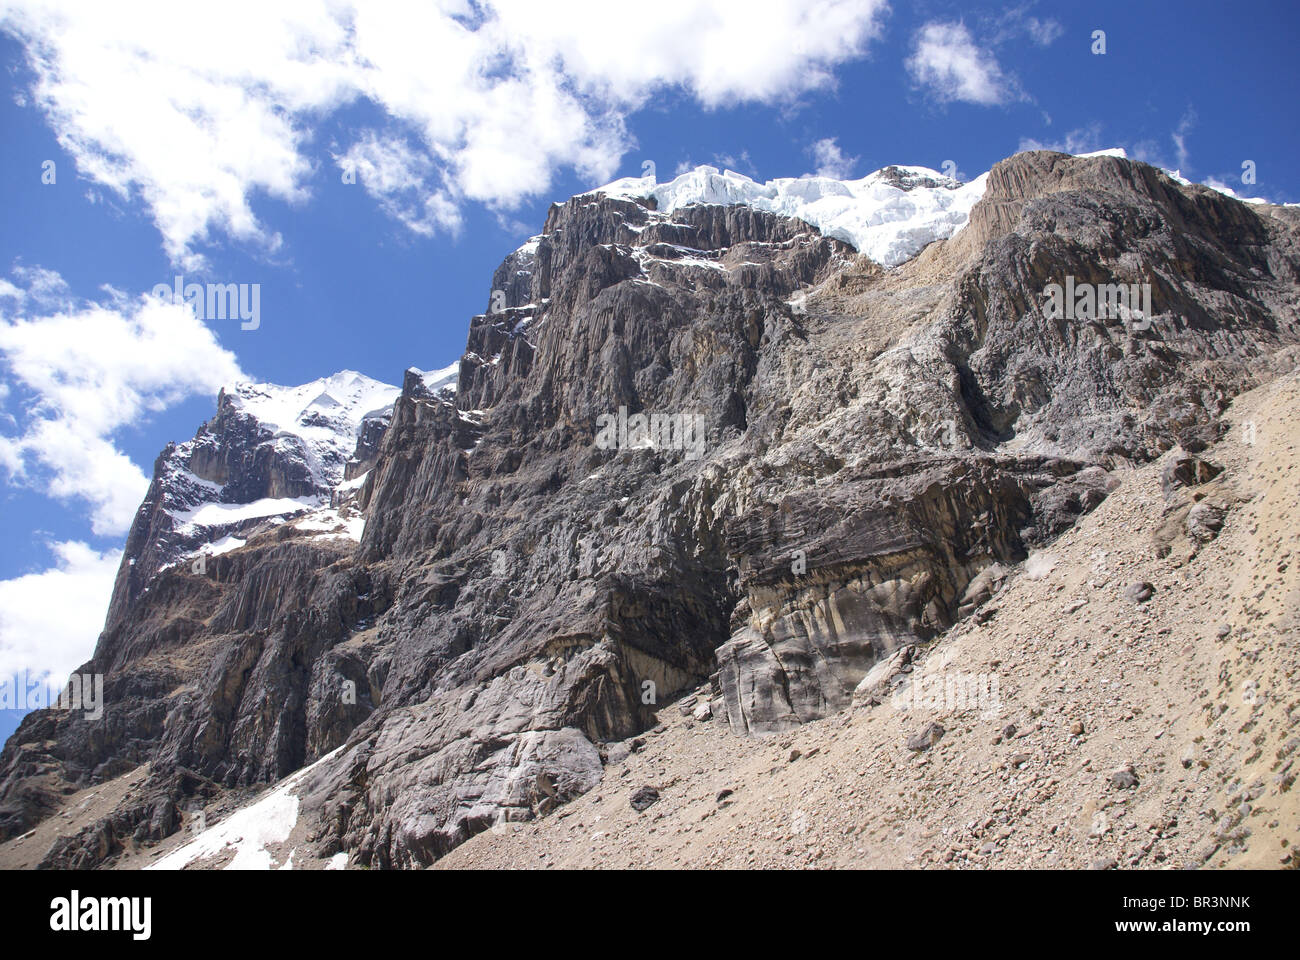 Glaciers suspendus sur des rocky mountain, Cuyoc, Cordillera Huayhuash, Andes, Pérou, Amérique du Sud Banque D'Images